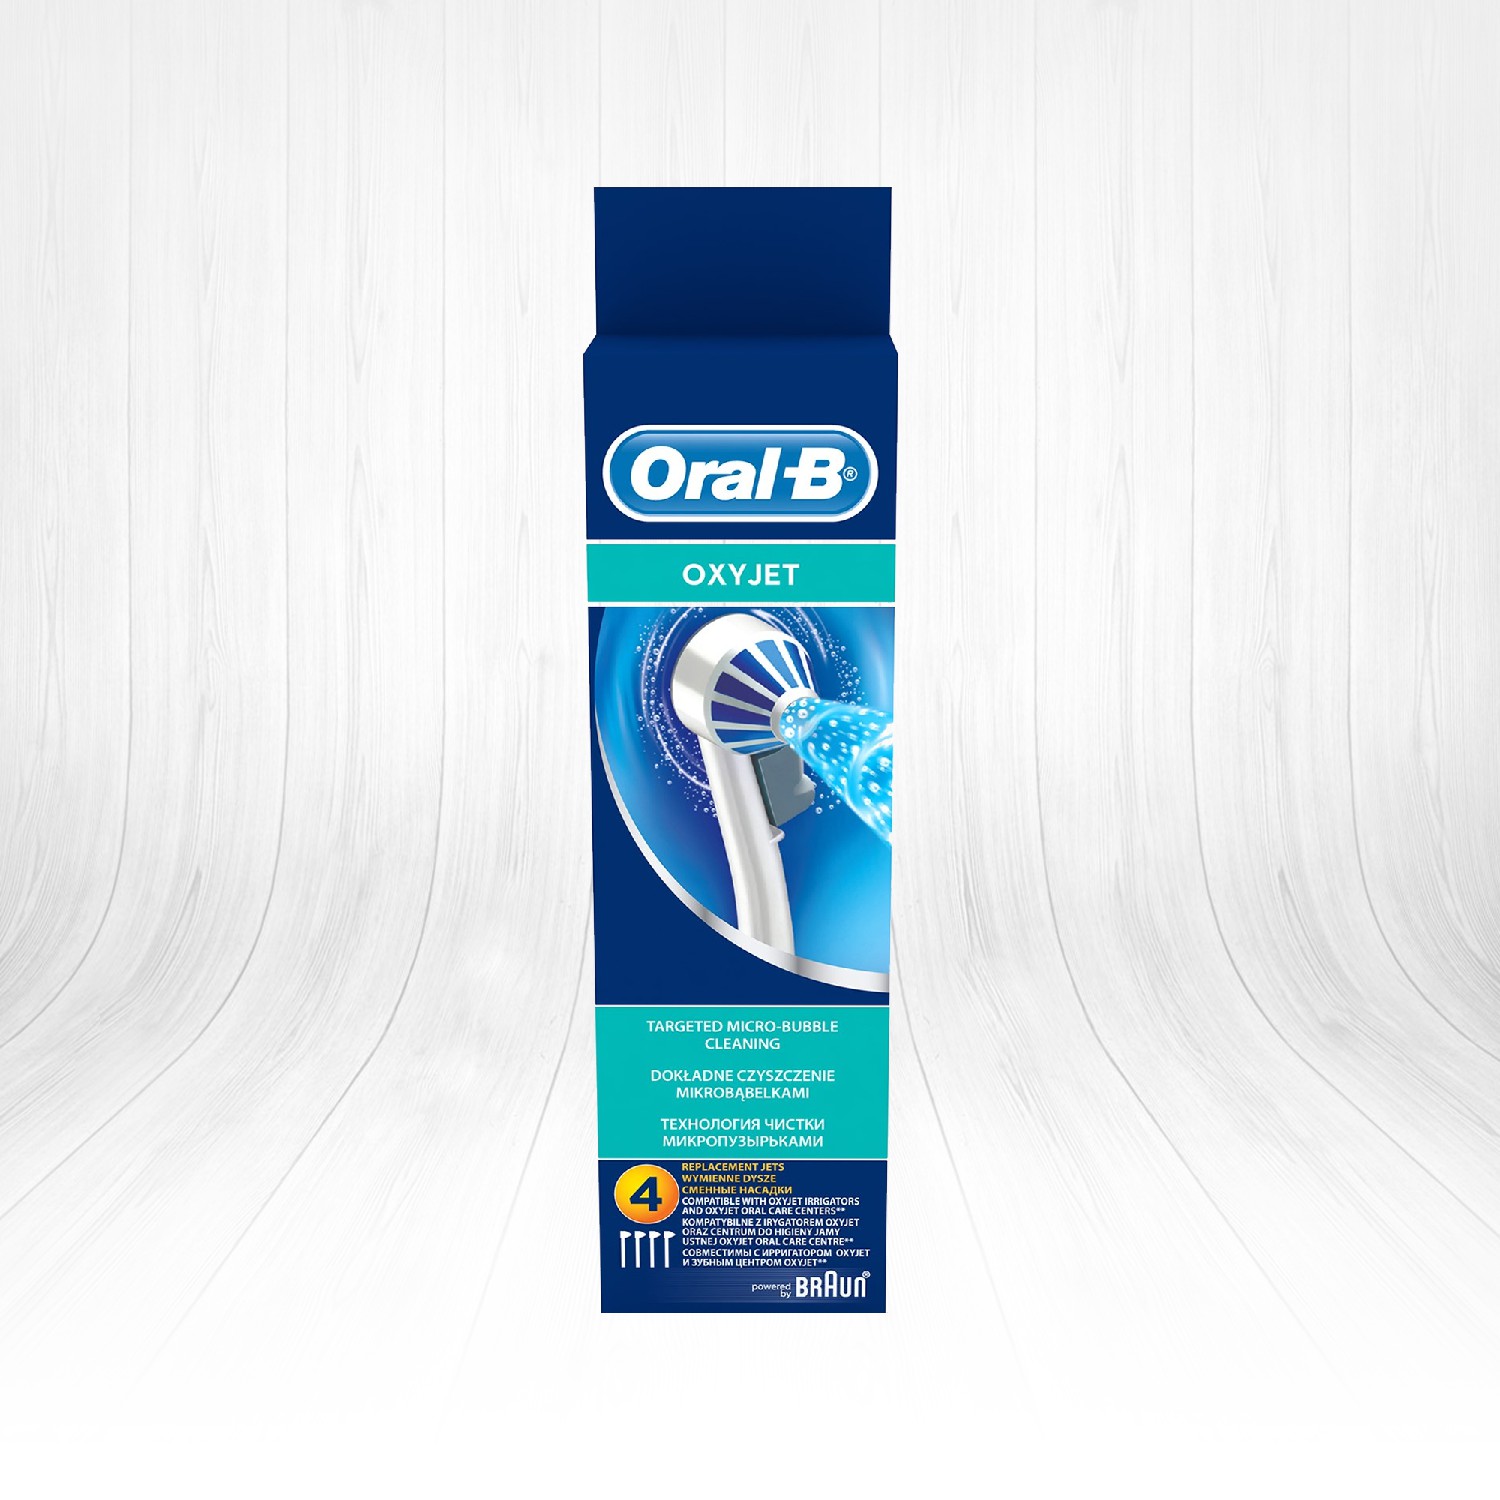 OralB Ağız Duşu Yedek Başlığı Oxyjet